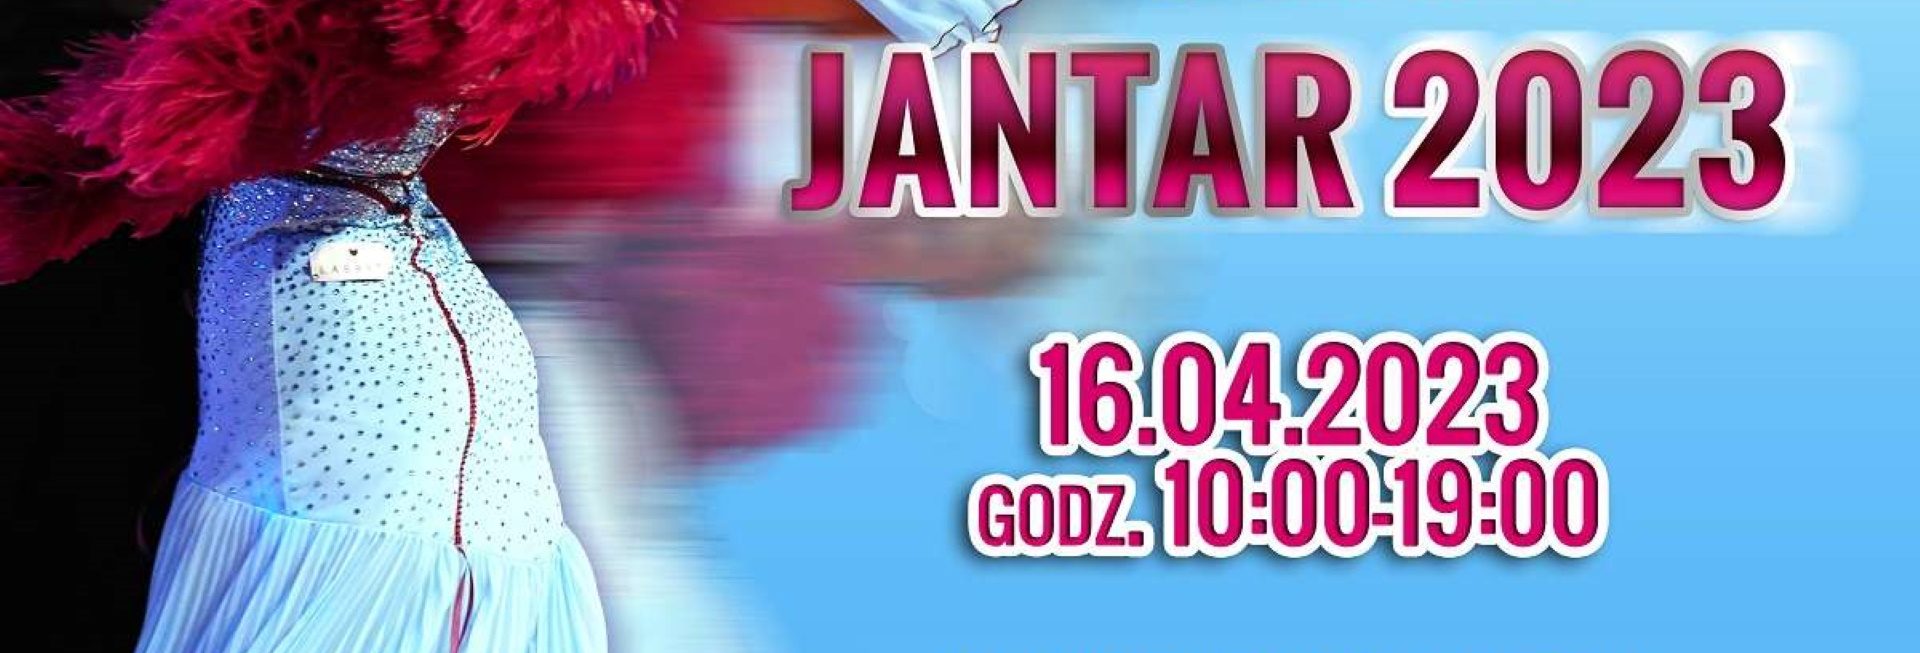 Plakat zapraszający w niedzielę 16 kwietnia 2023 r. do Elbląga na Ogólnopolski Turniej Tańca Sportowego "JANTAR" Elbląg 2023.